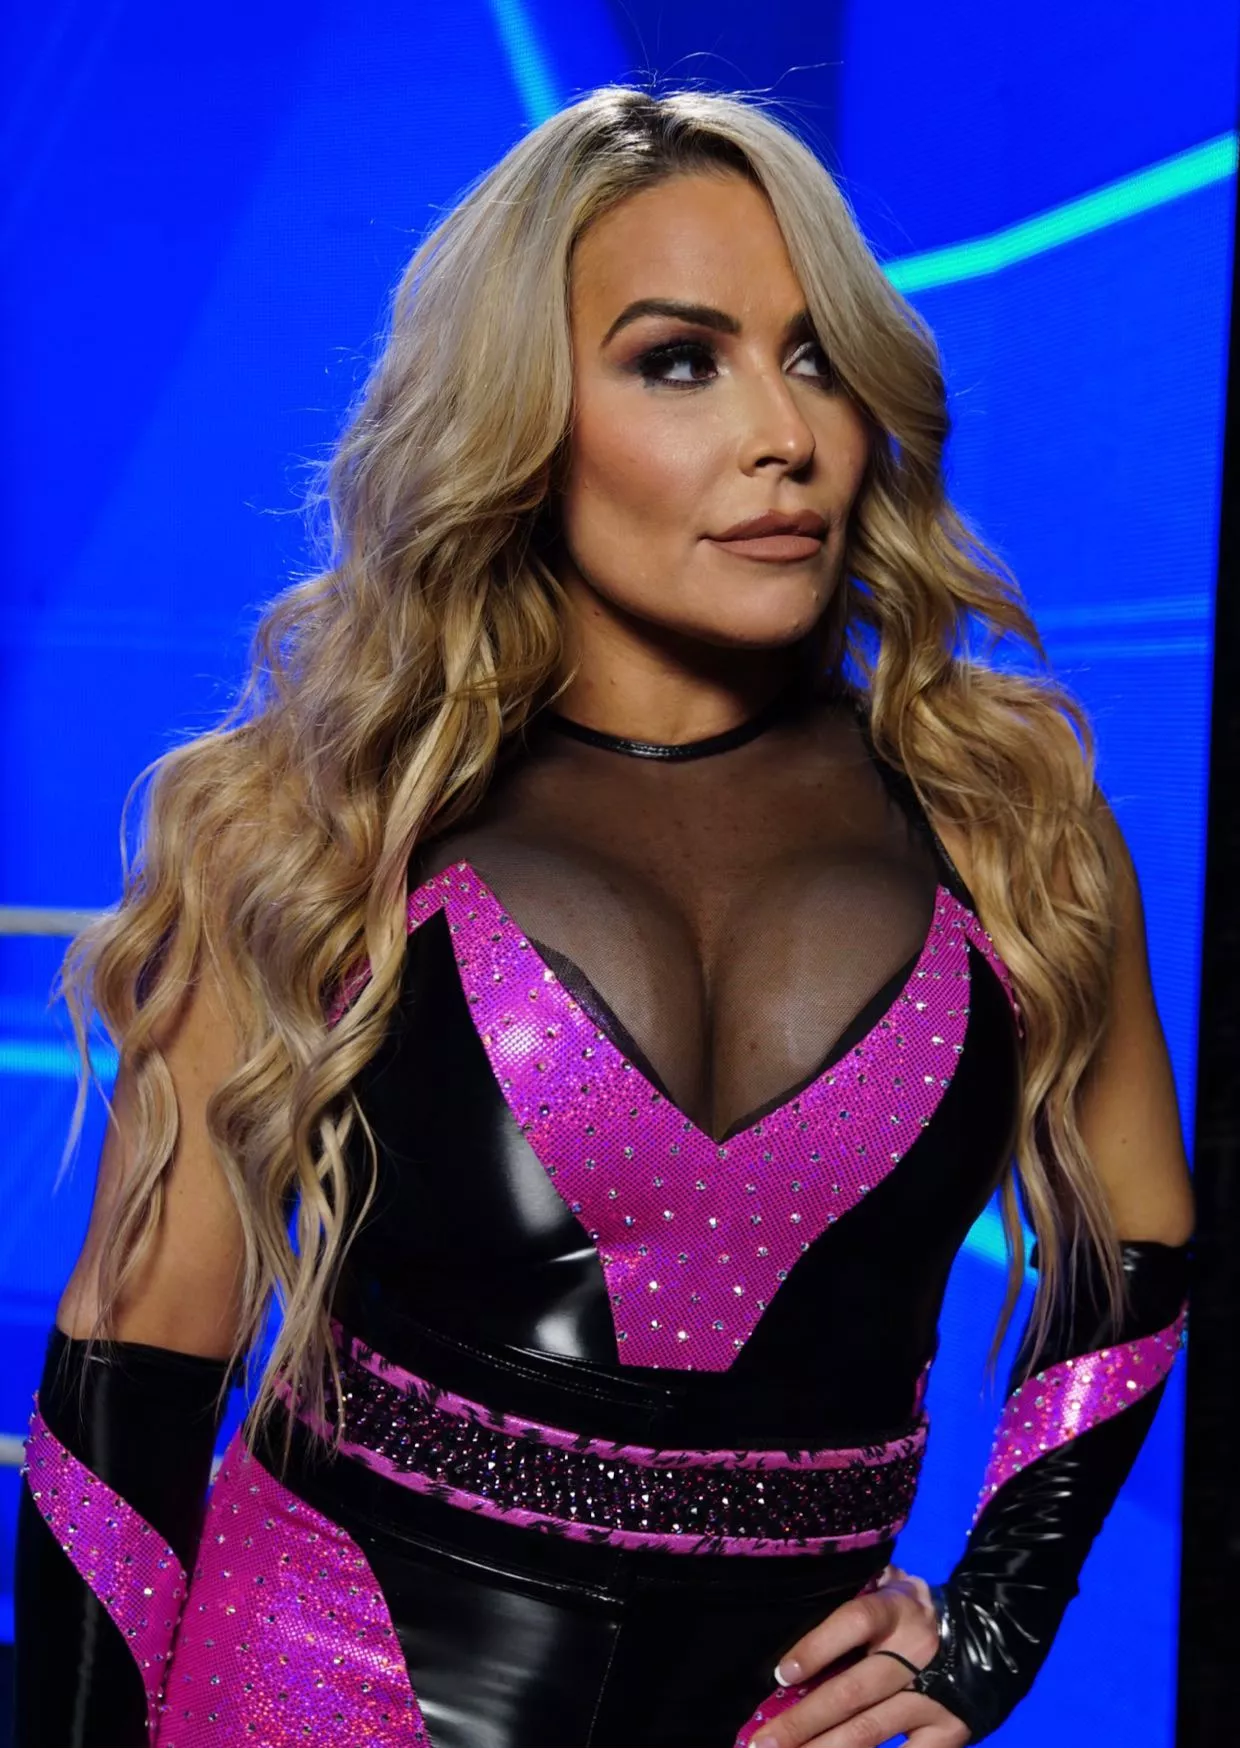 Natalya Wwe Tits.